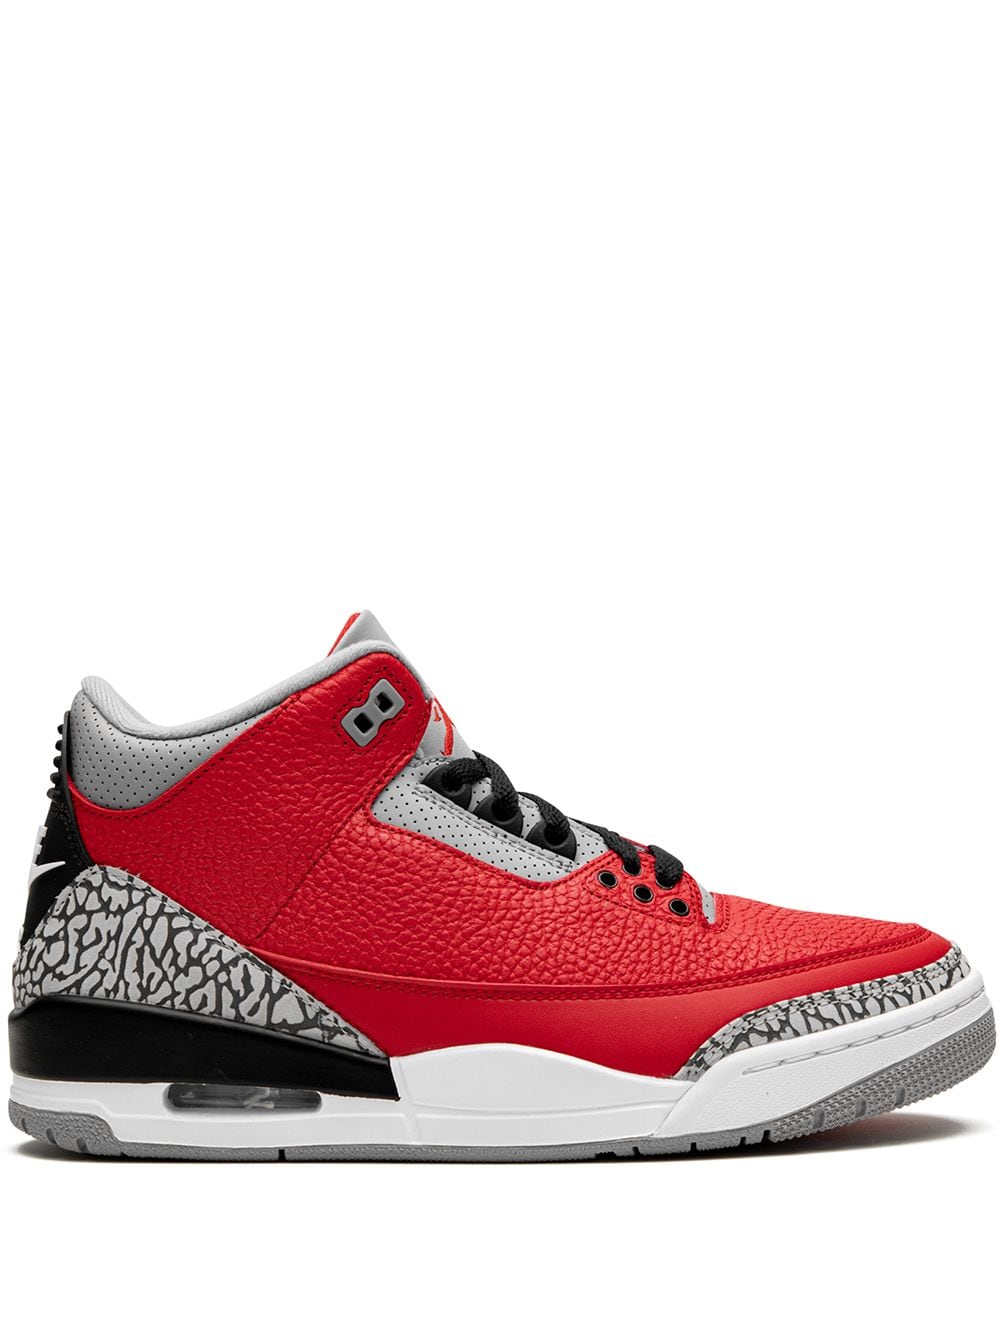 Jordan Air Jordan 3 Retro "Red Cement/Unite" sneakers